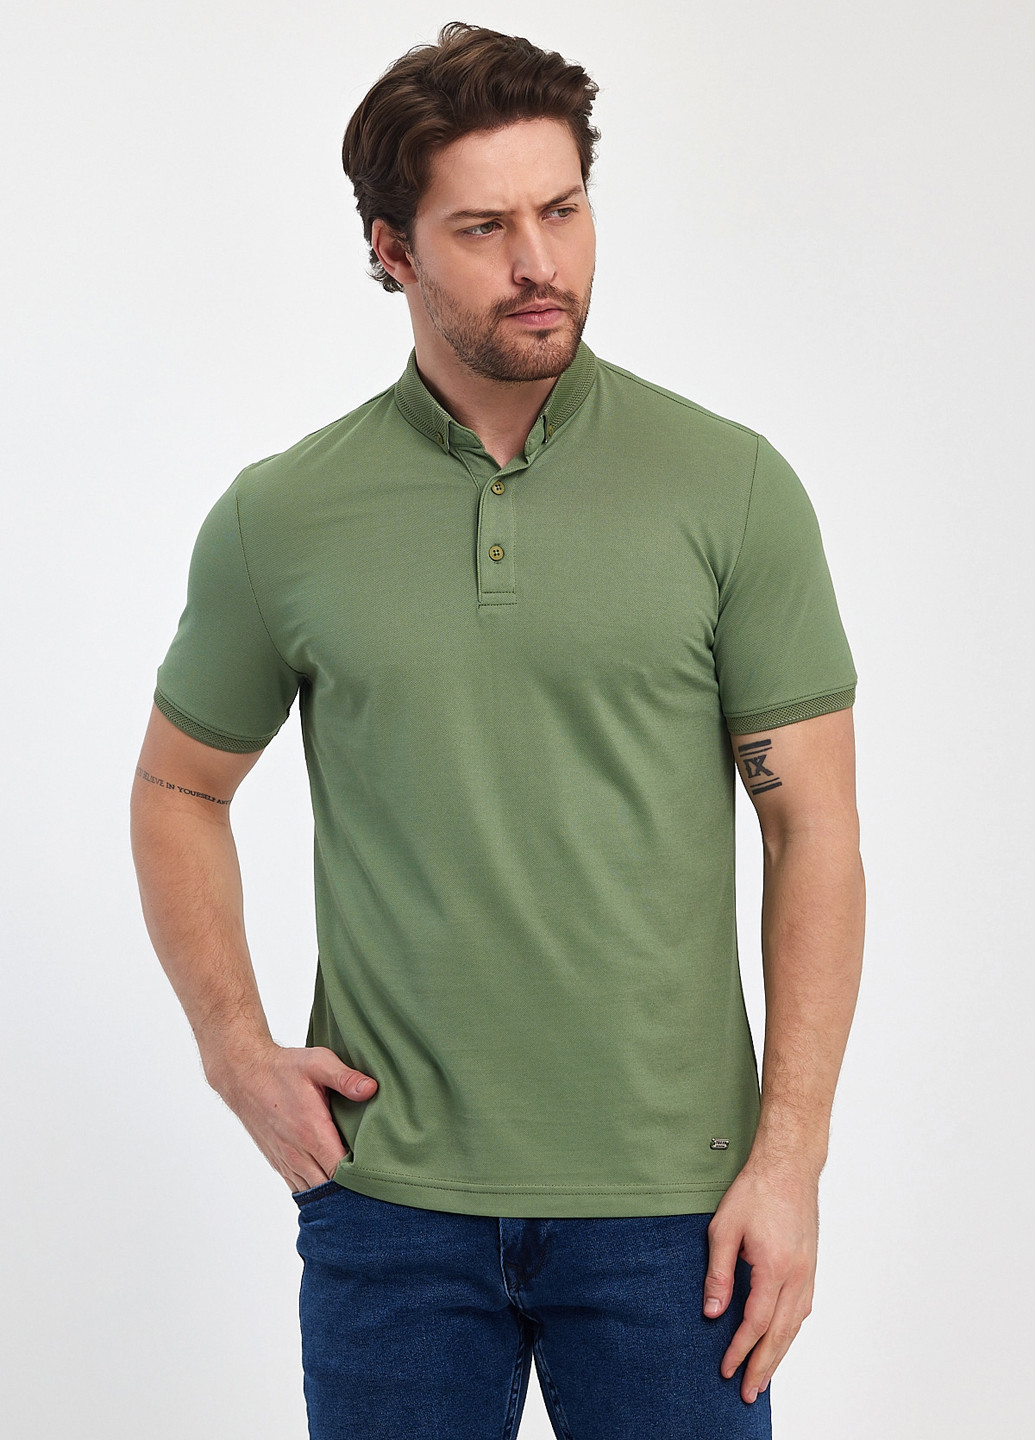 Оливковая футболка-поло для мужчин Trend Collection однотонная